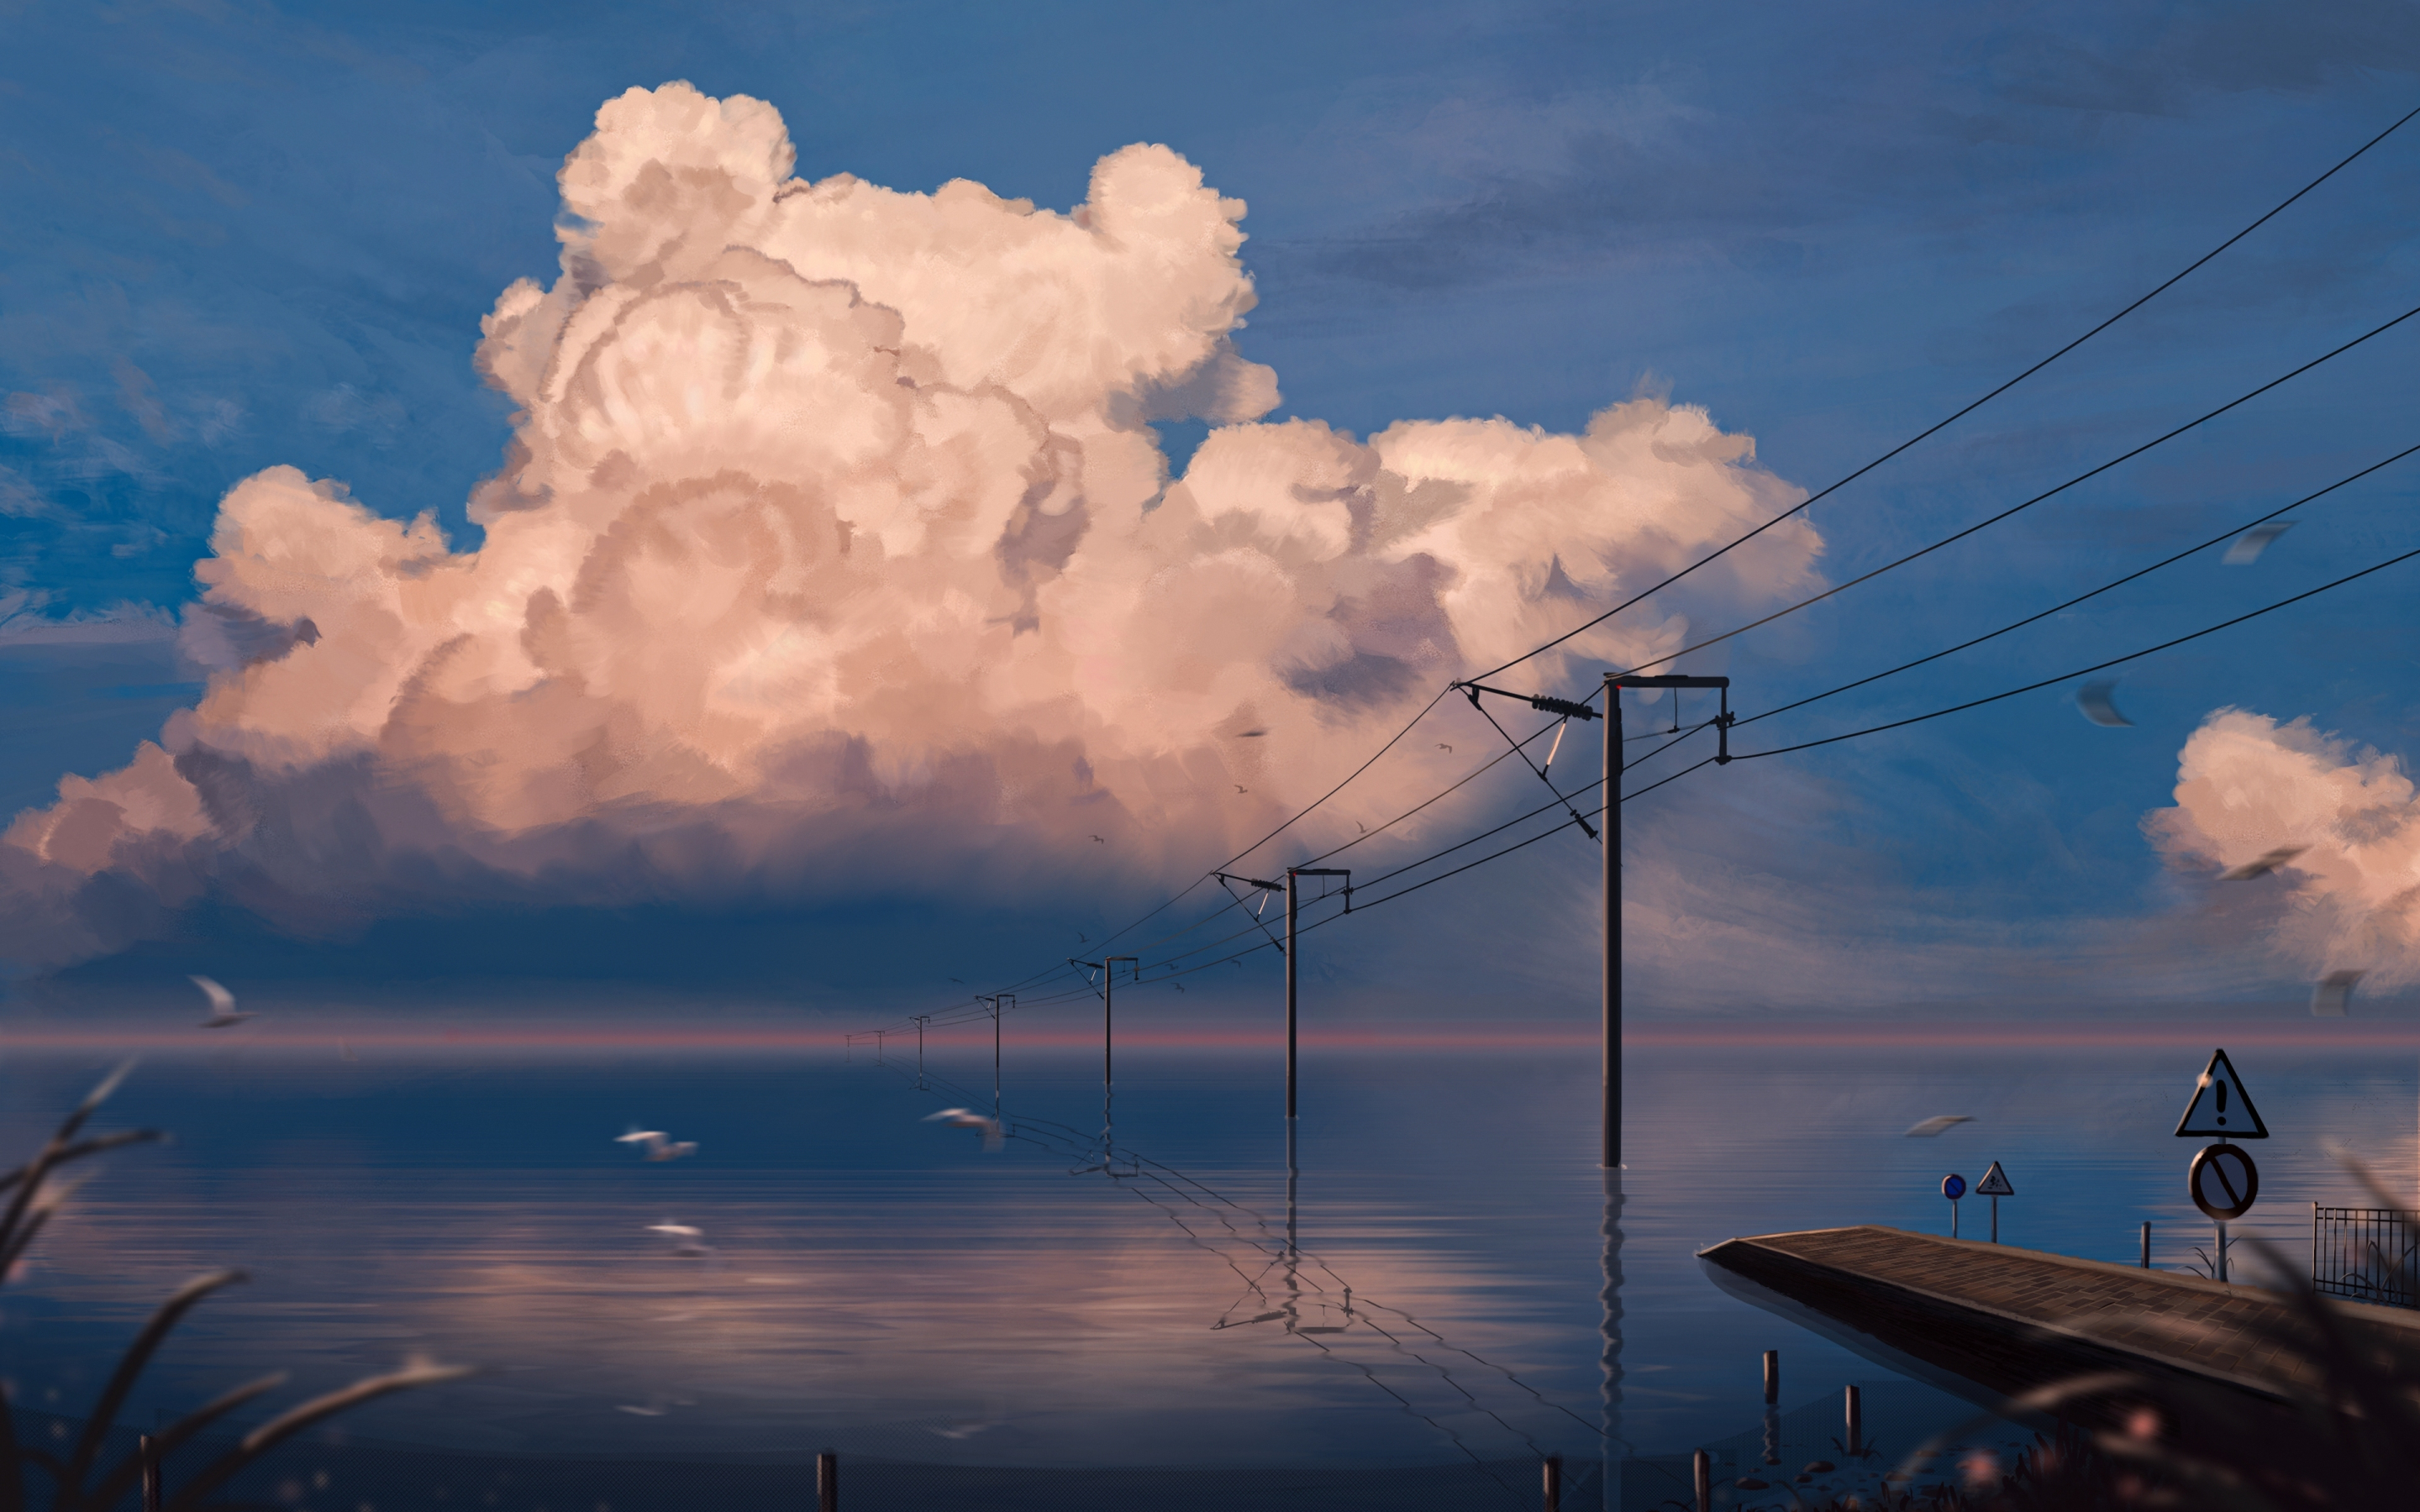 Lake, pier, anime, original, electric poles, art, 2880x1800 wallpaper